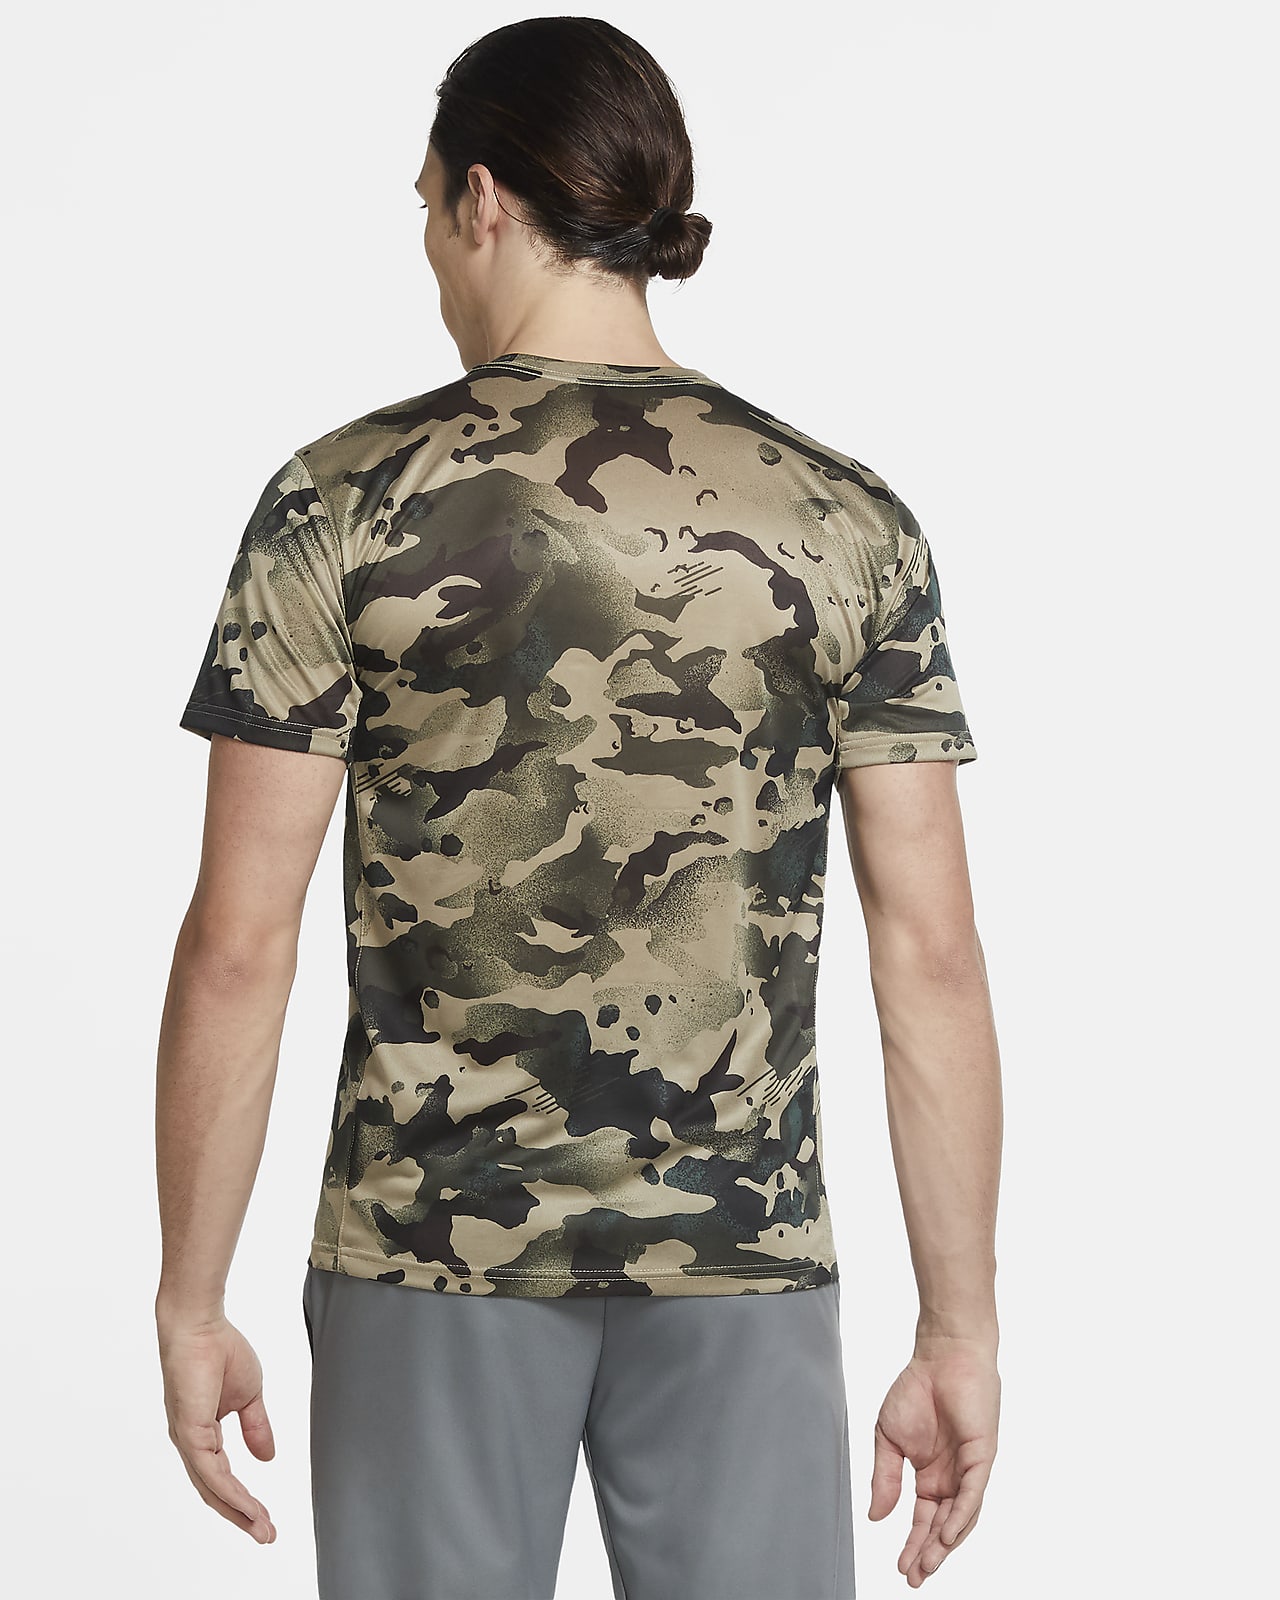 Nike Dri-FIT Men's Camo Training T-Shirt. Nike RO